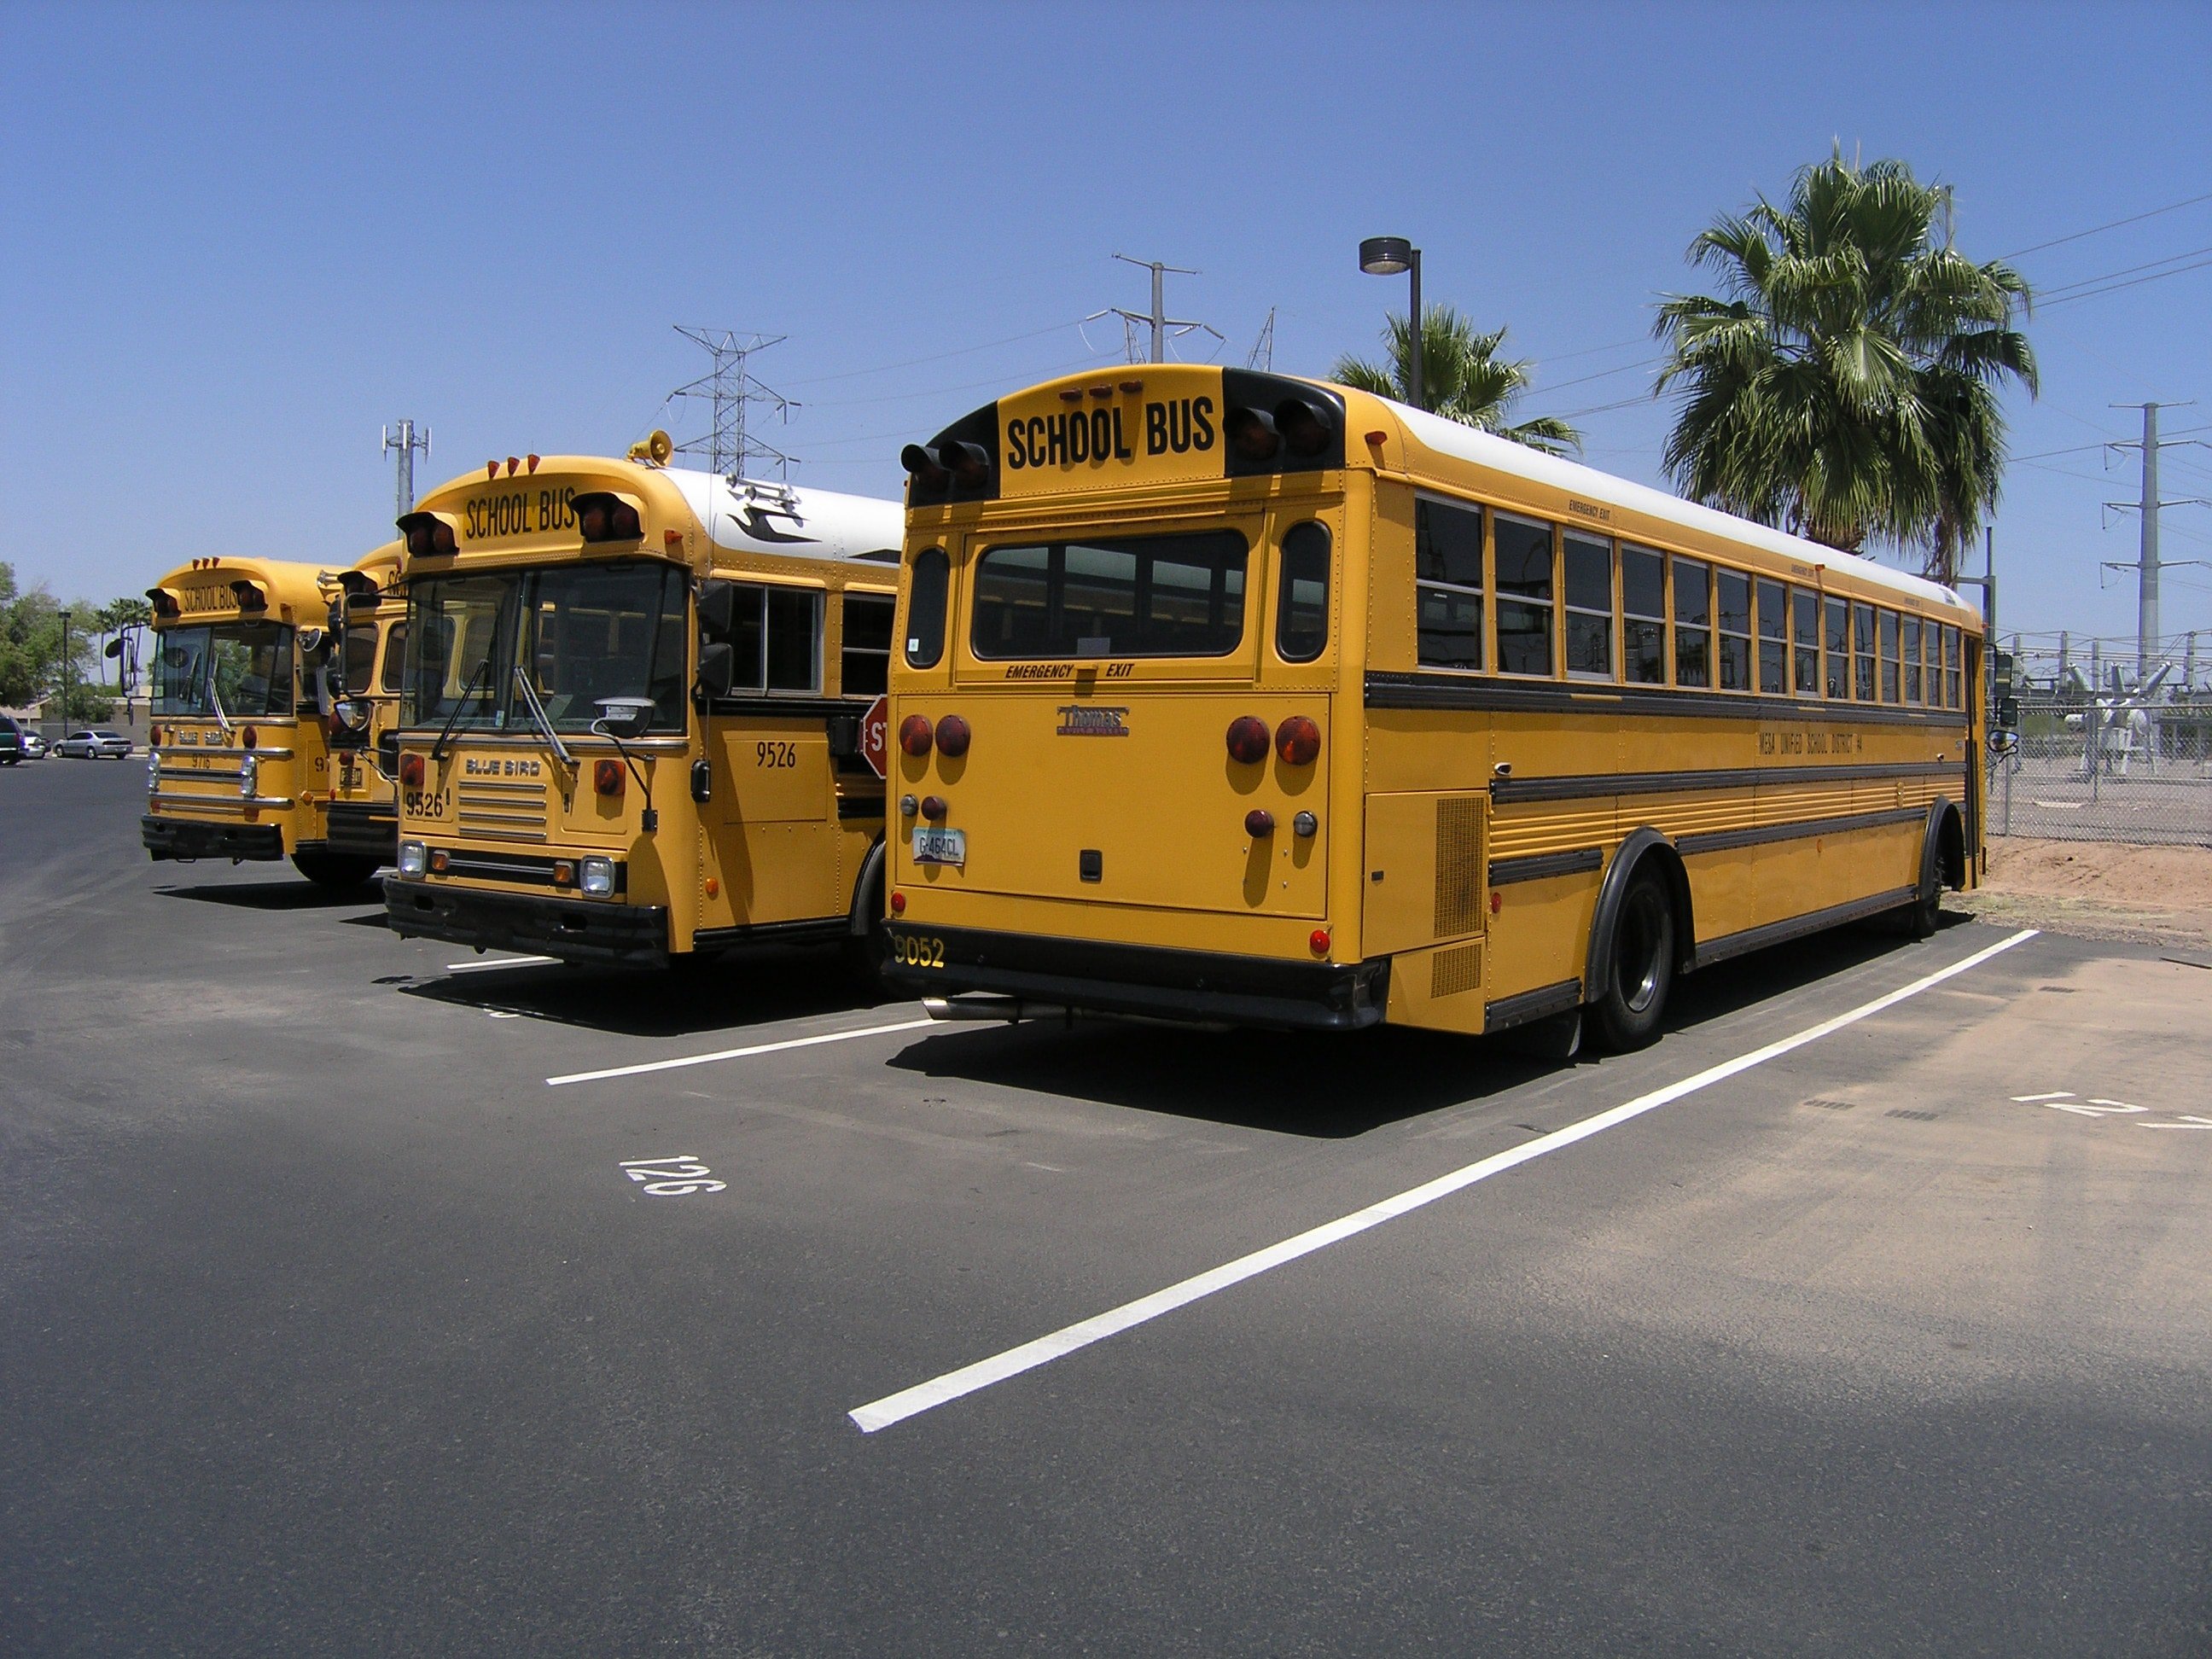 Bus scolaires | Source : Unsplash